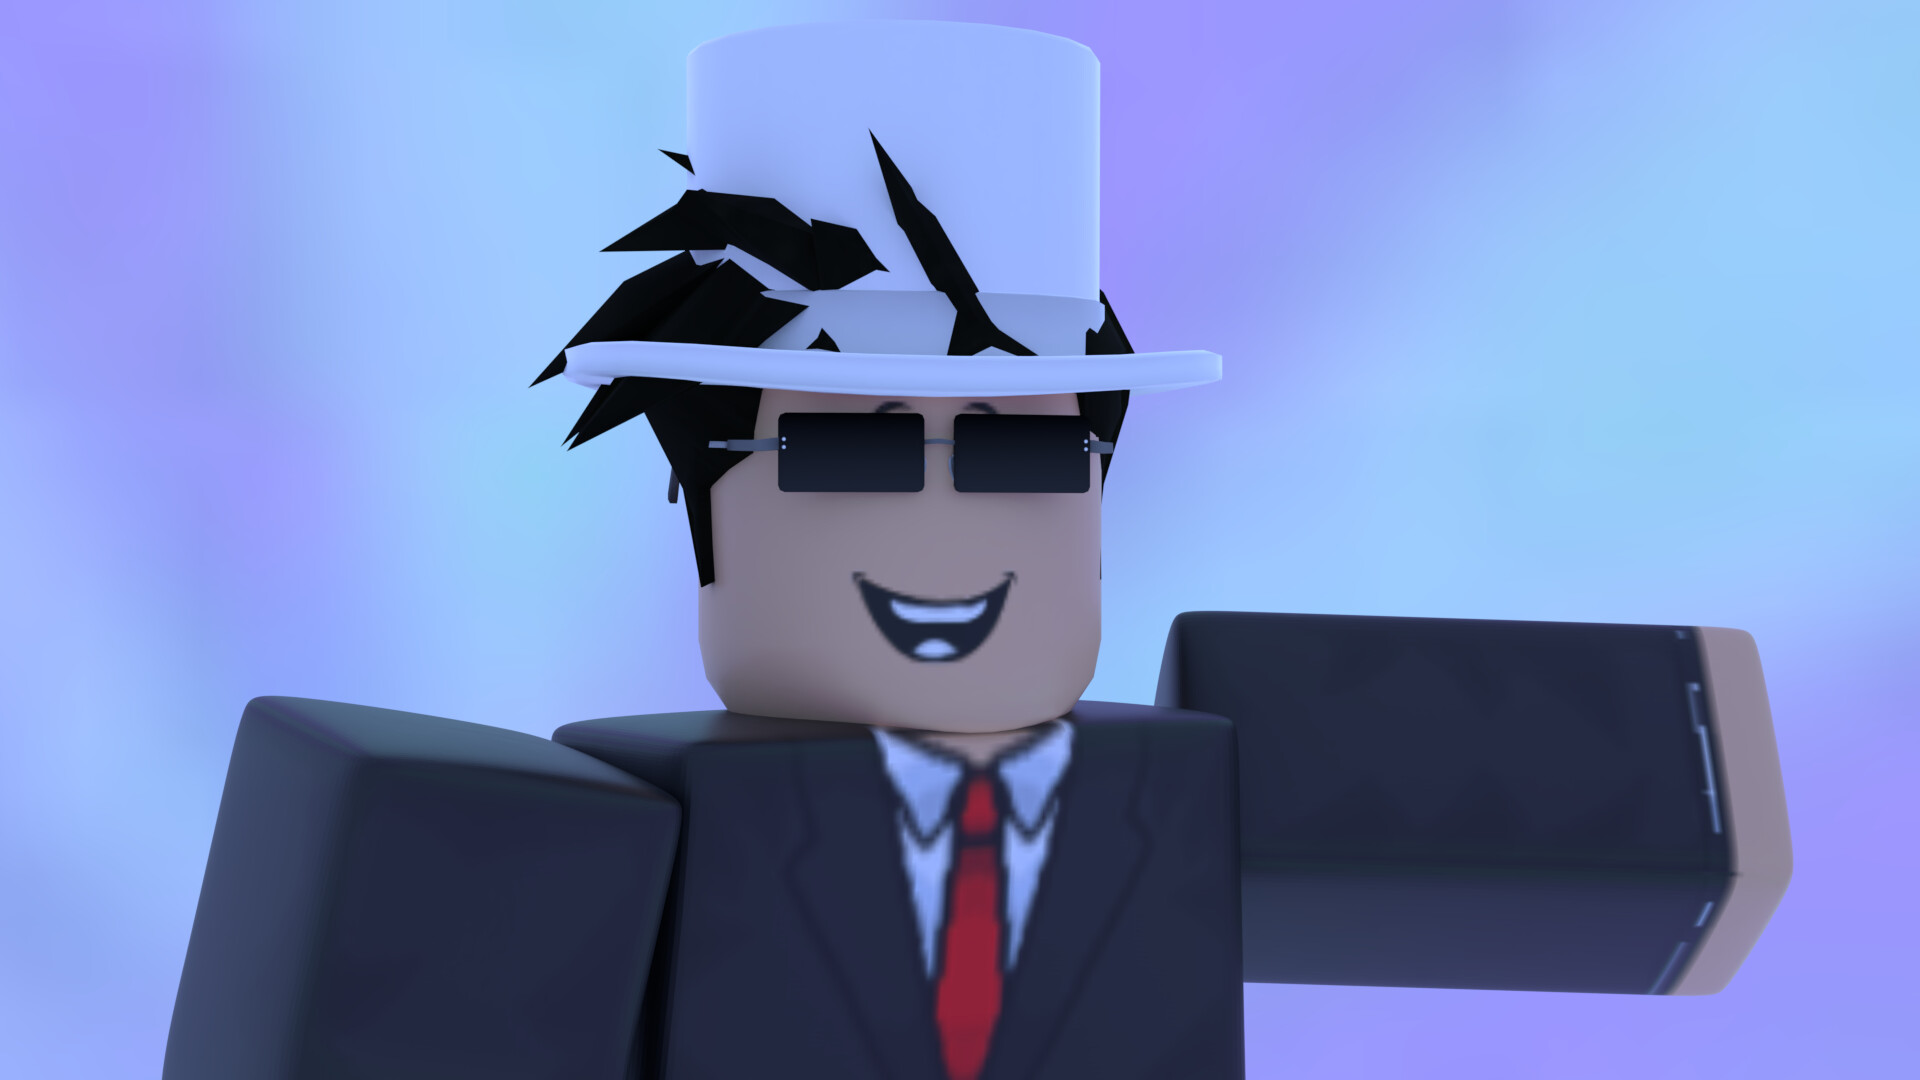 Do my roblox avatar looks good?